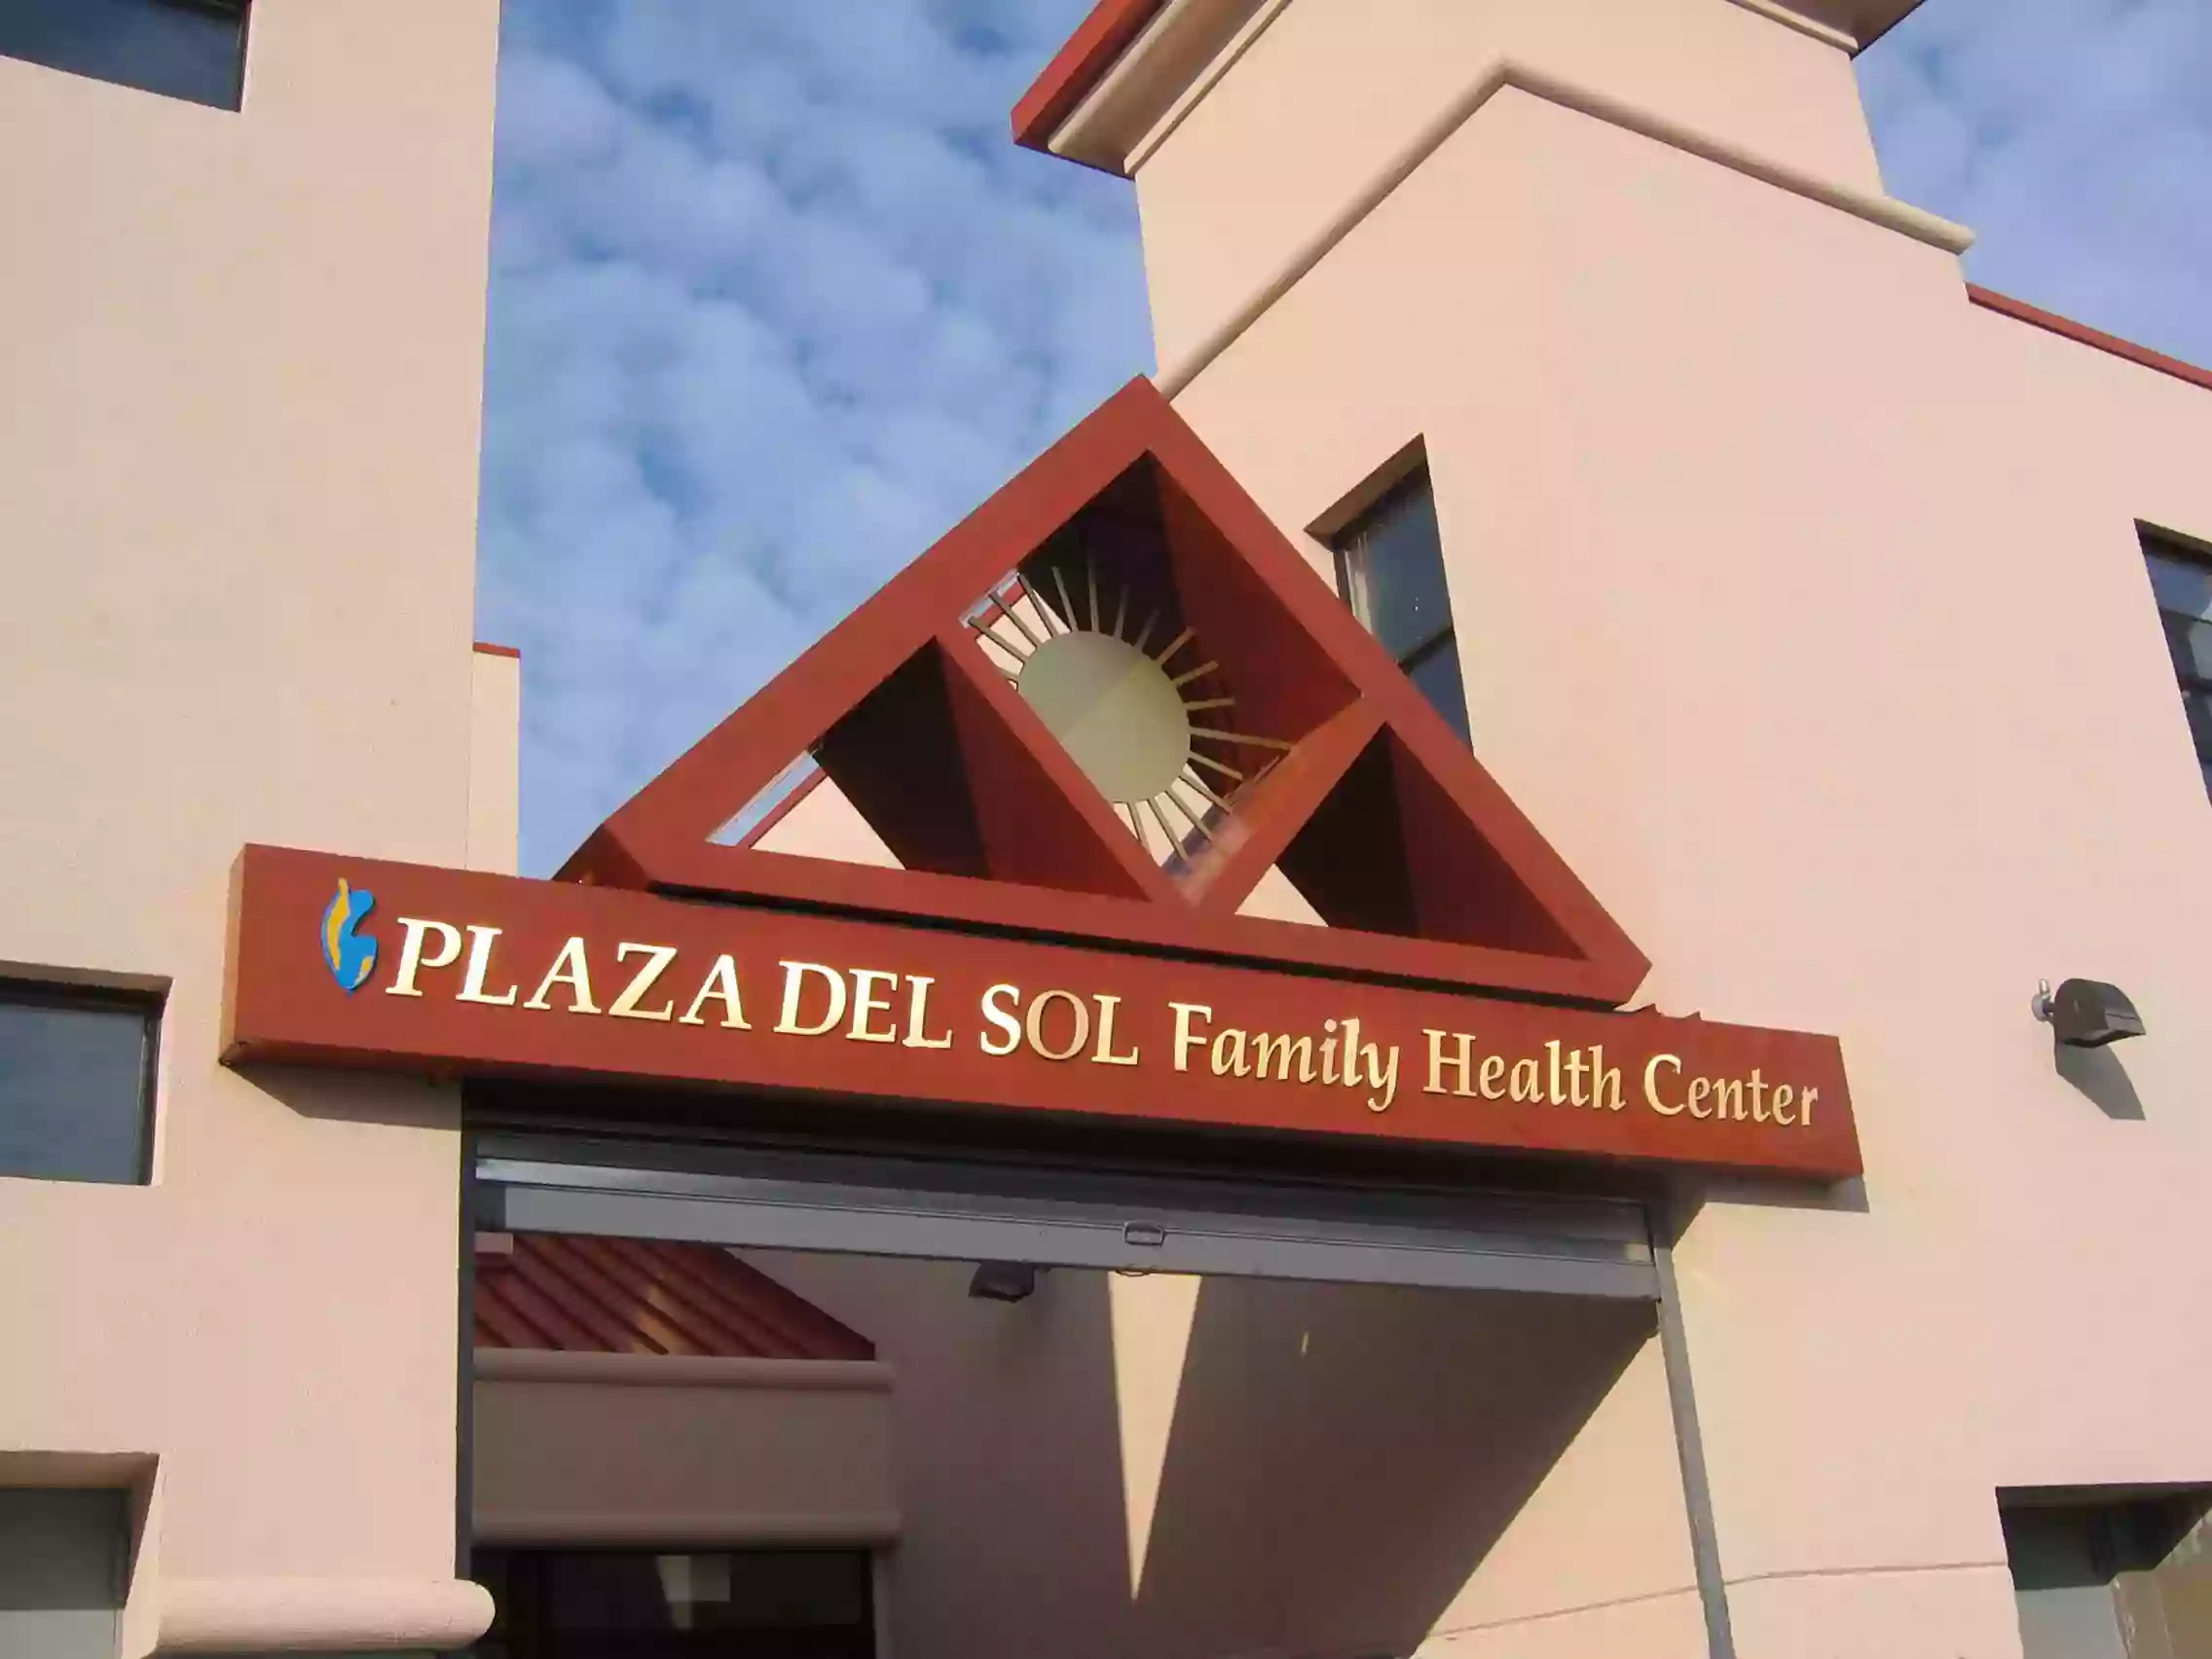 Plaza del Sol Family Health Center